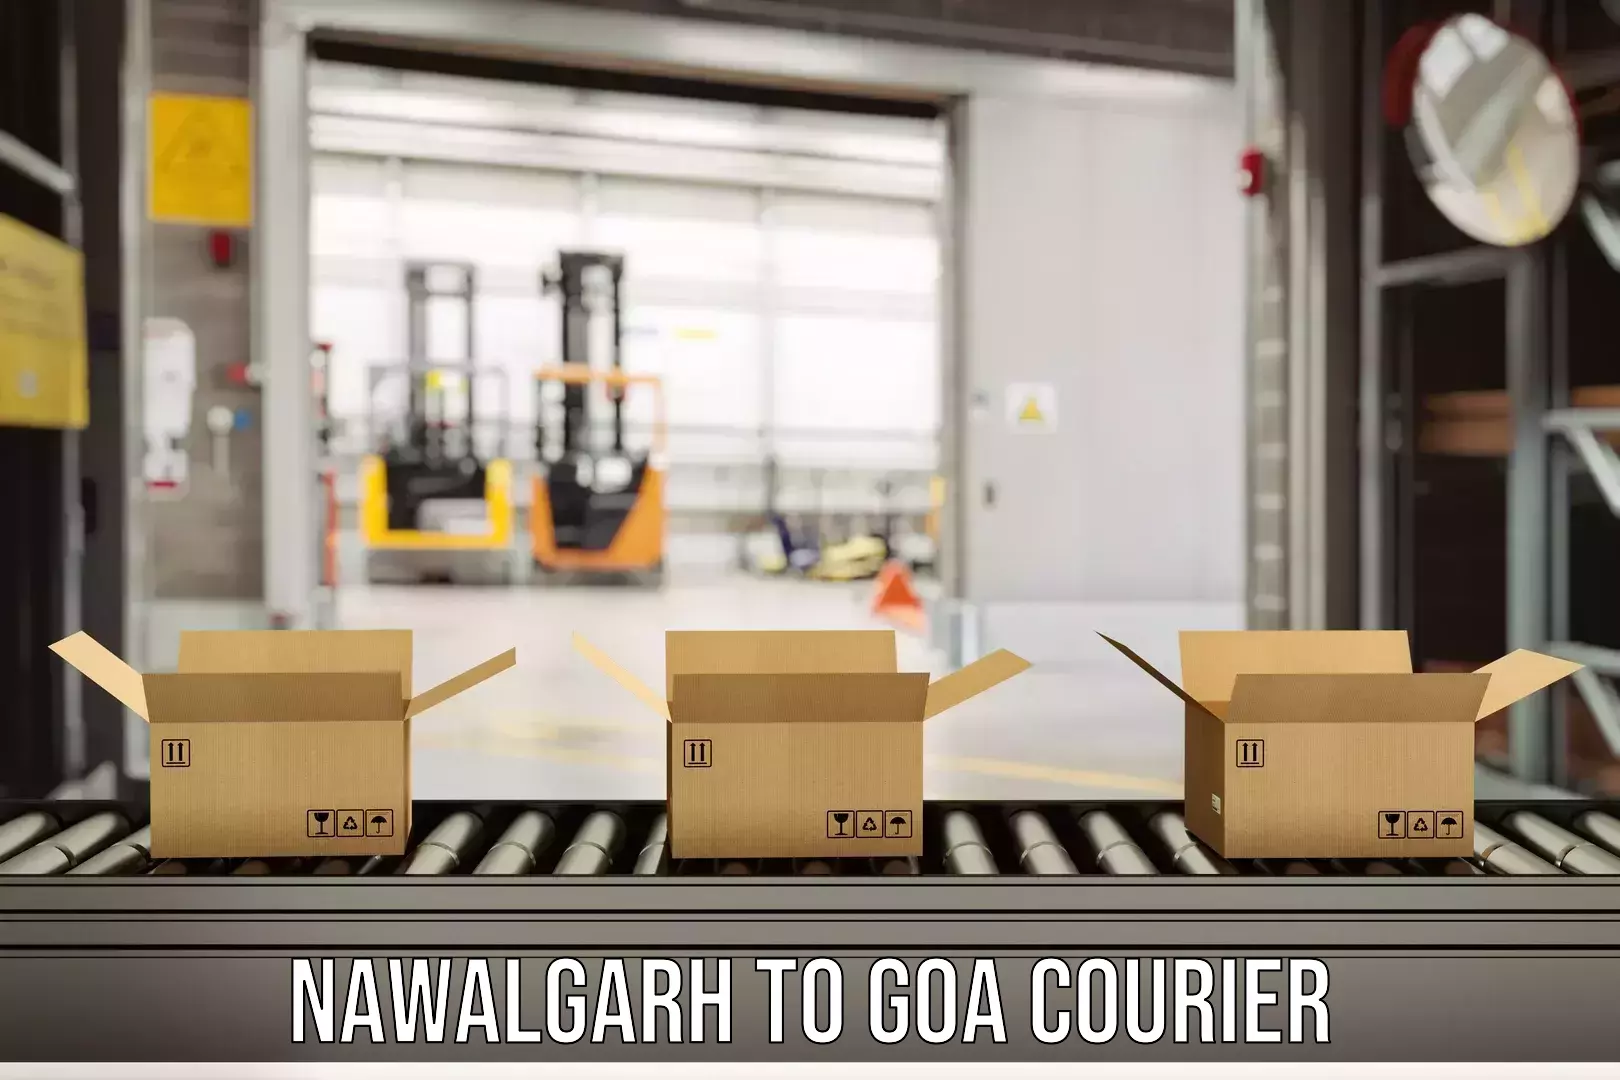 Global shipping networks Nawalgarh to IIT Goa